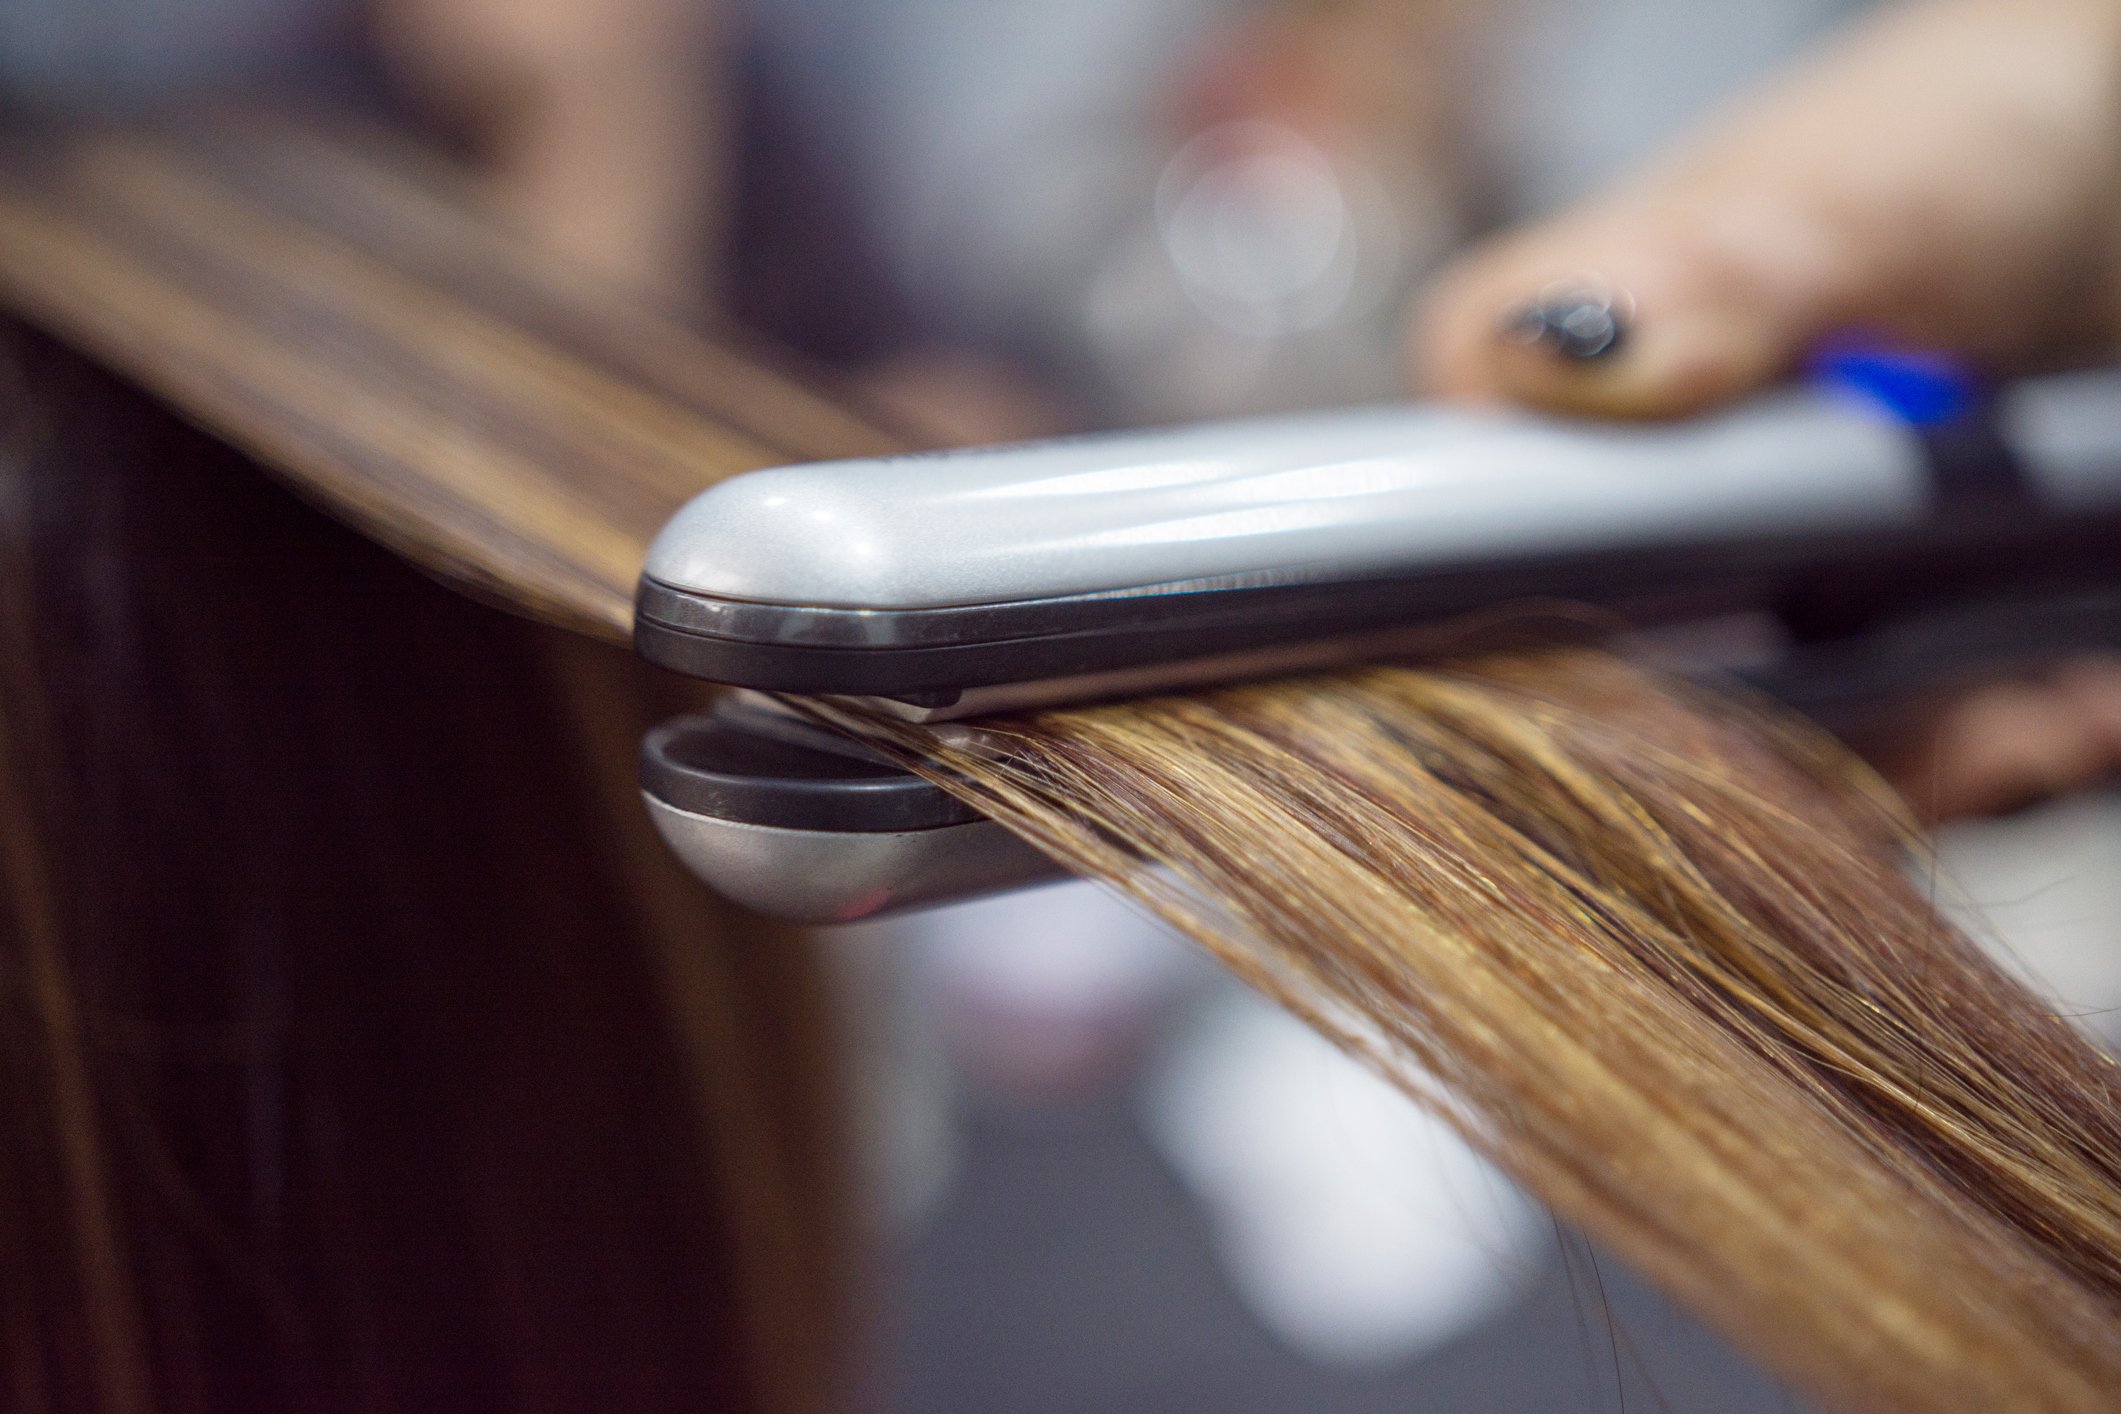 Friseur verwendet modernes Eisen, um die Haare der Kunden im Salon zu stylen | Quelle: Getty Images